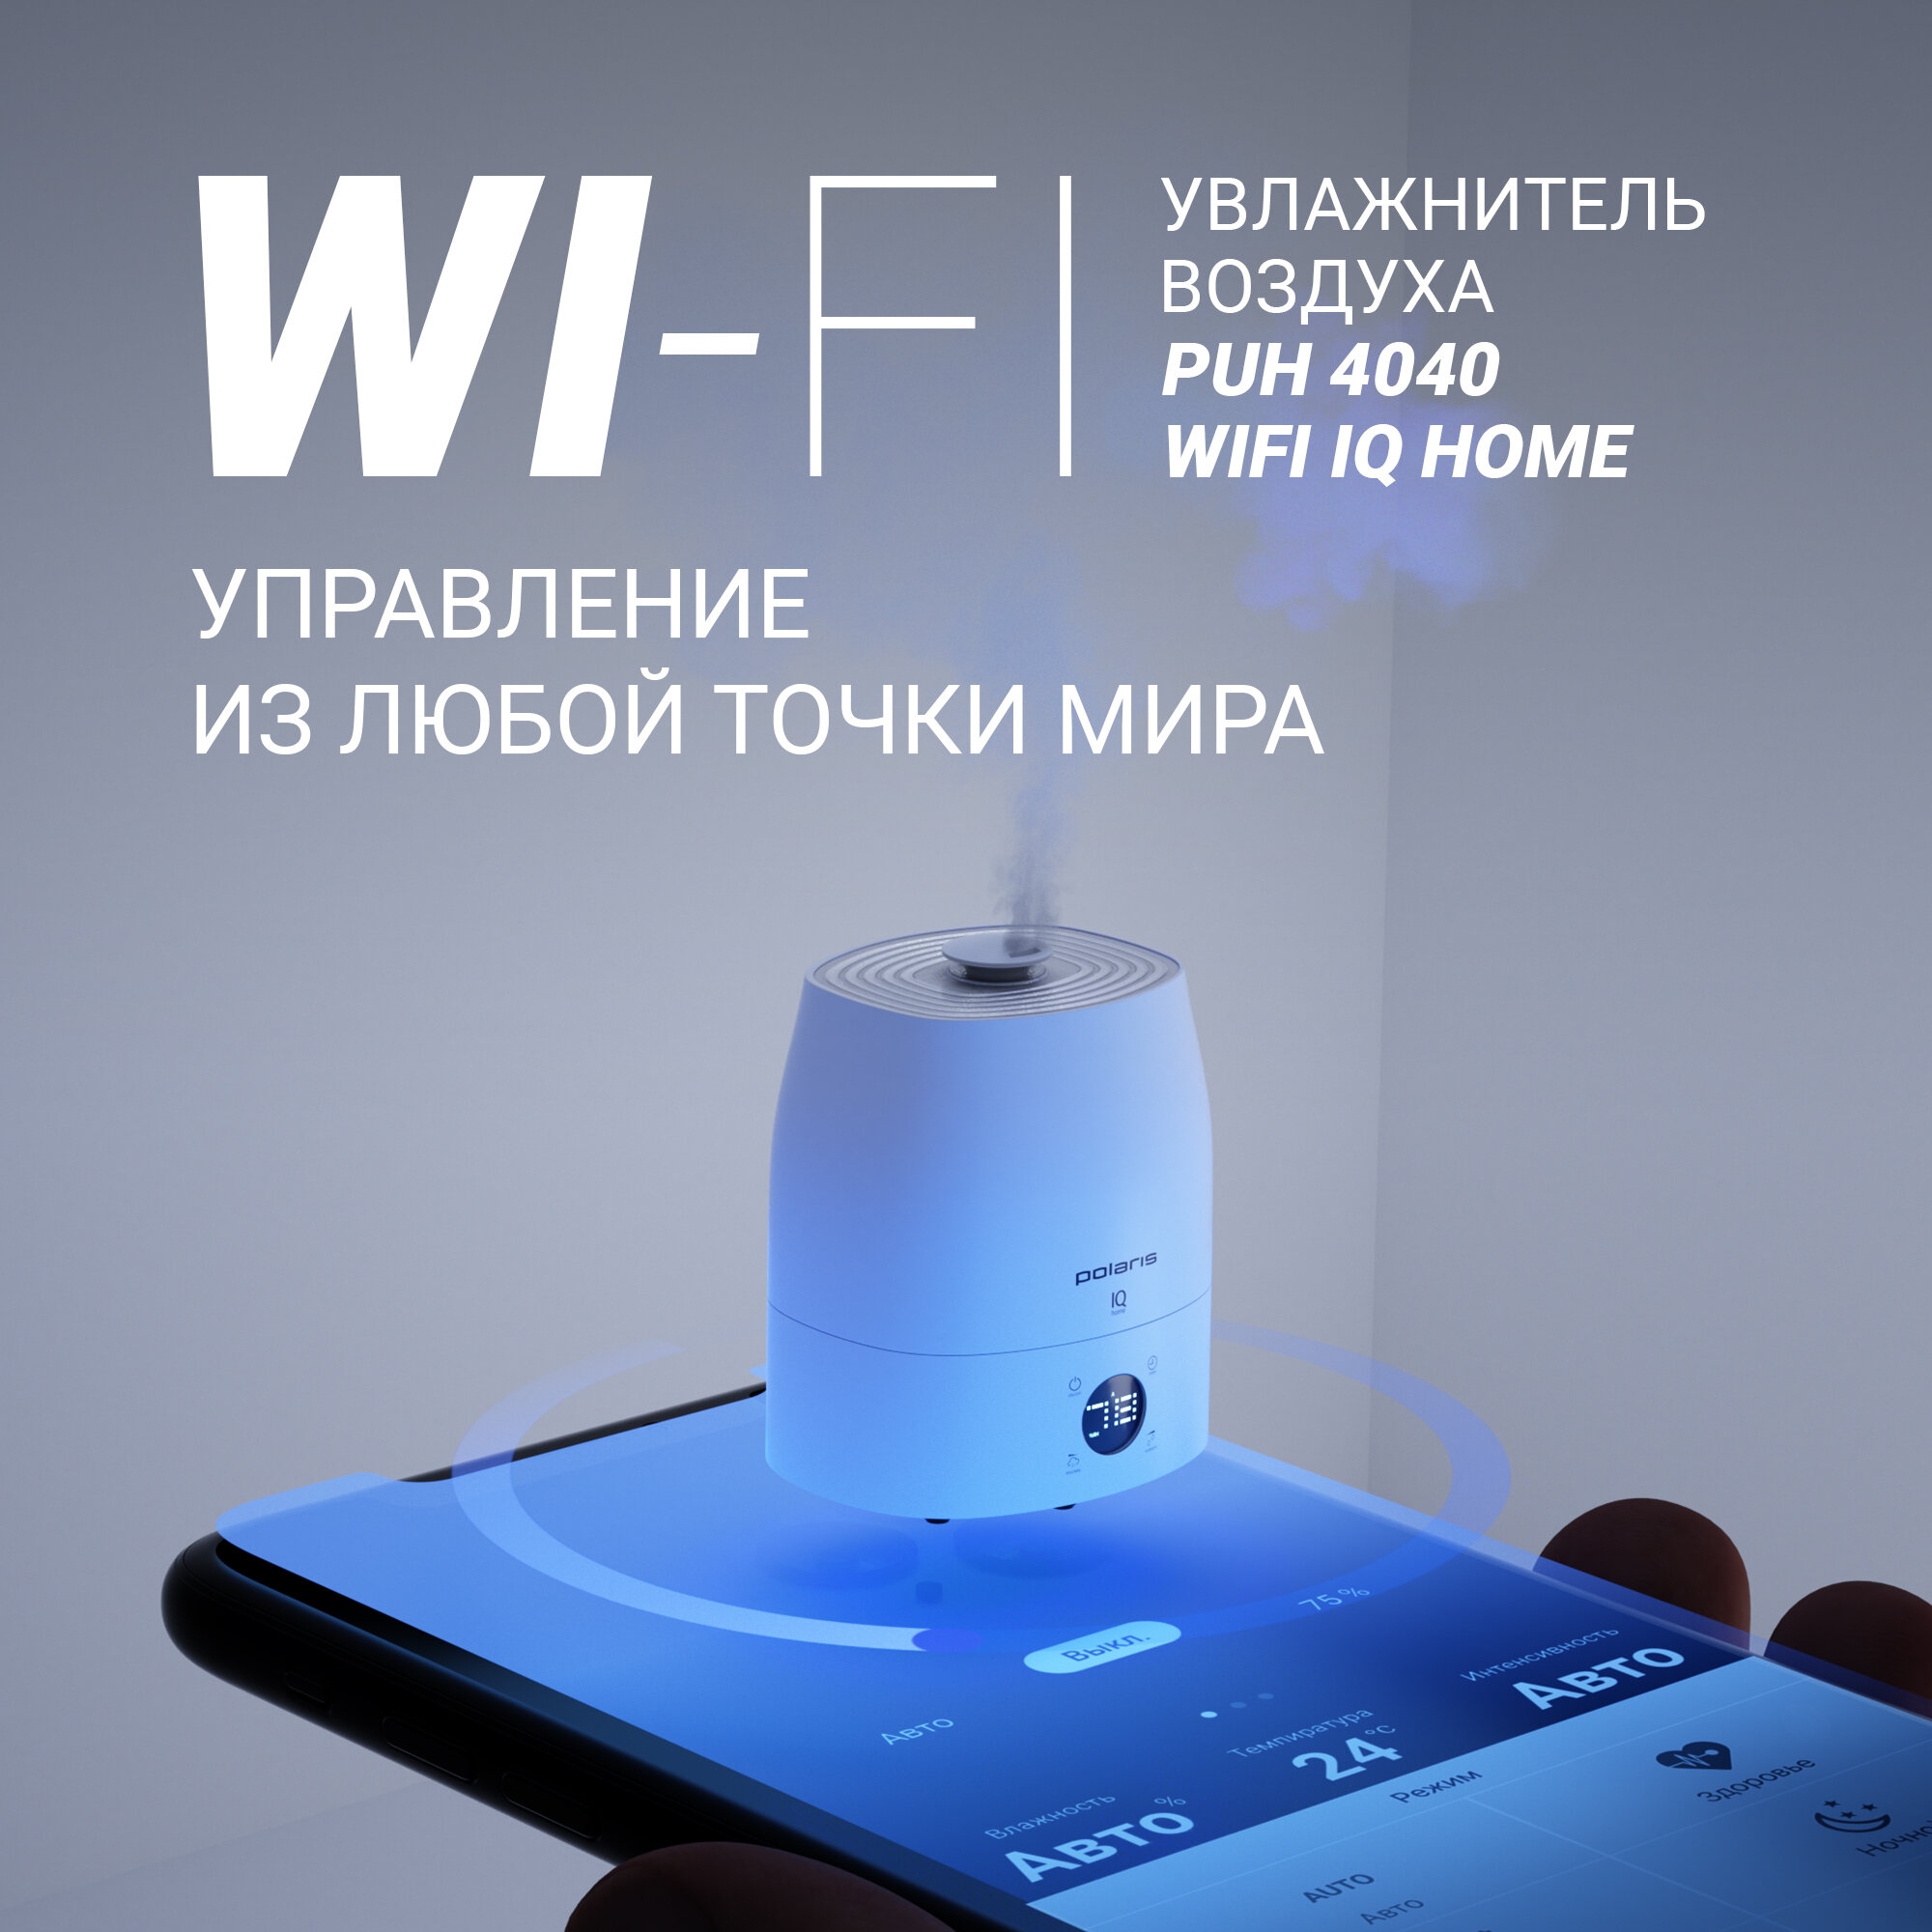 Увлажнитель воздуха ультразвуковой Polaris PUH 4040 WIFI IQ Home, 5л, белый - фото №2